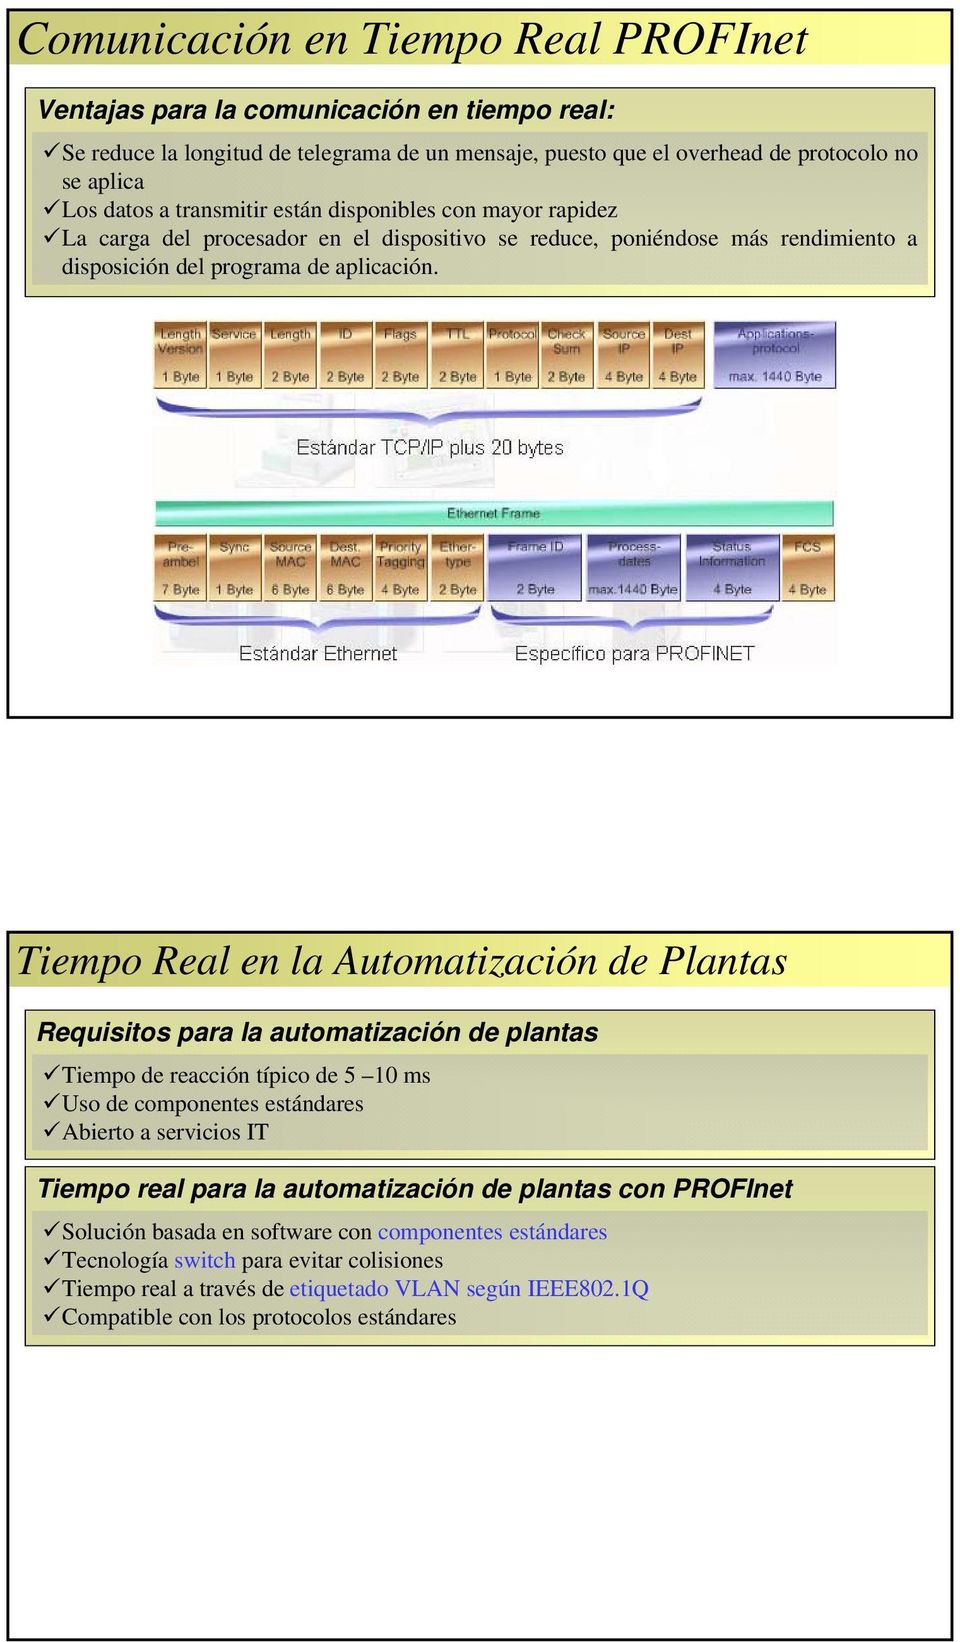 Tiempo Real en la Automatización de Plantas Requisitos para la automatización de plantas Tiempo de reacción típico de 5 10 ms Uso de componentes estándares Abierto a servicios IT Tiempo real para la